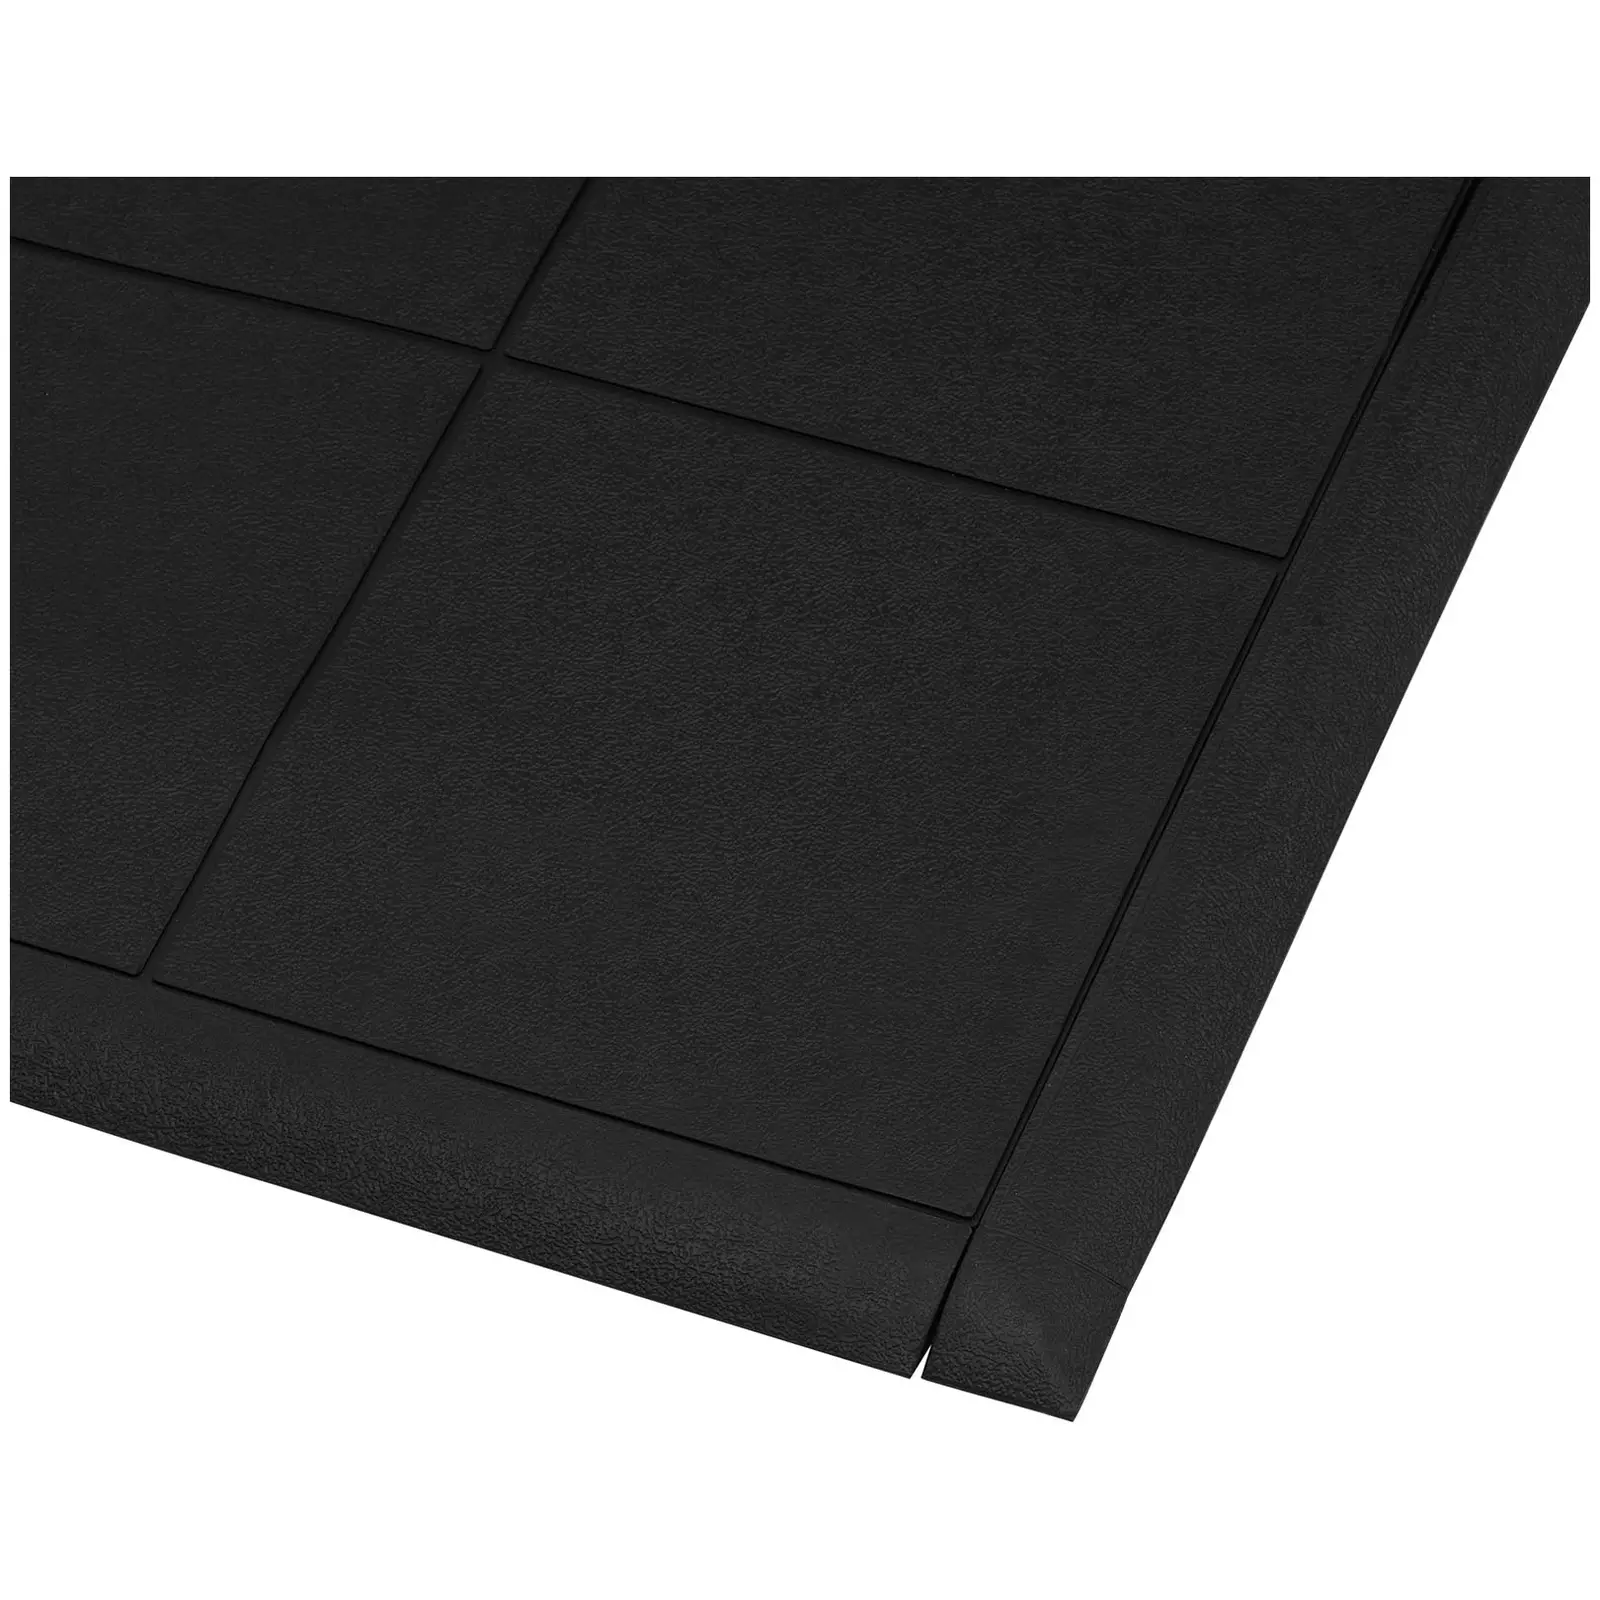 Záróprofil álláskönnyítő szőnyeghez - 975 x 54 mm - a 10030772-es cikkszámmal jelölt álláskönnyítő szőnyeghez